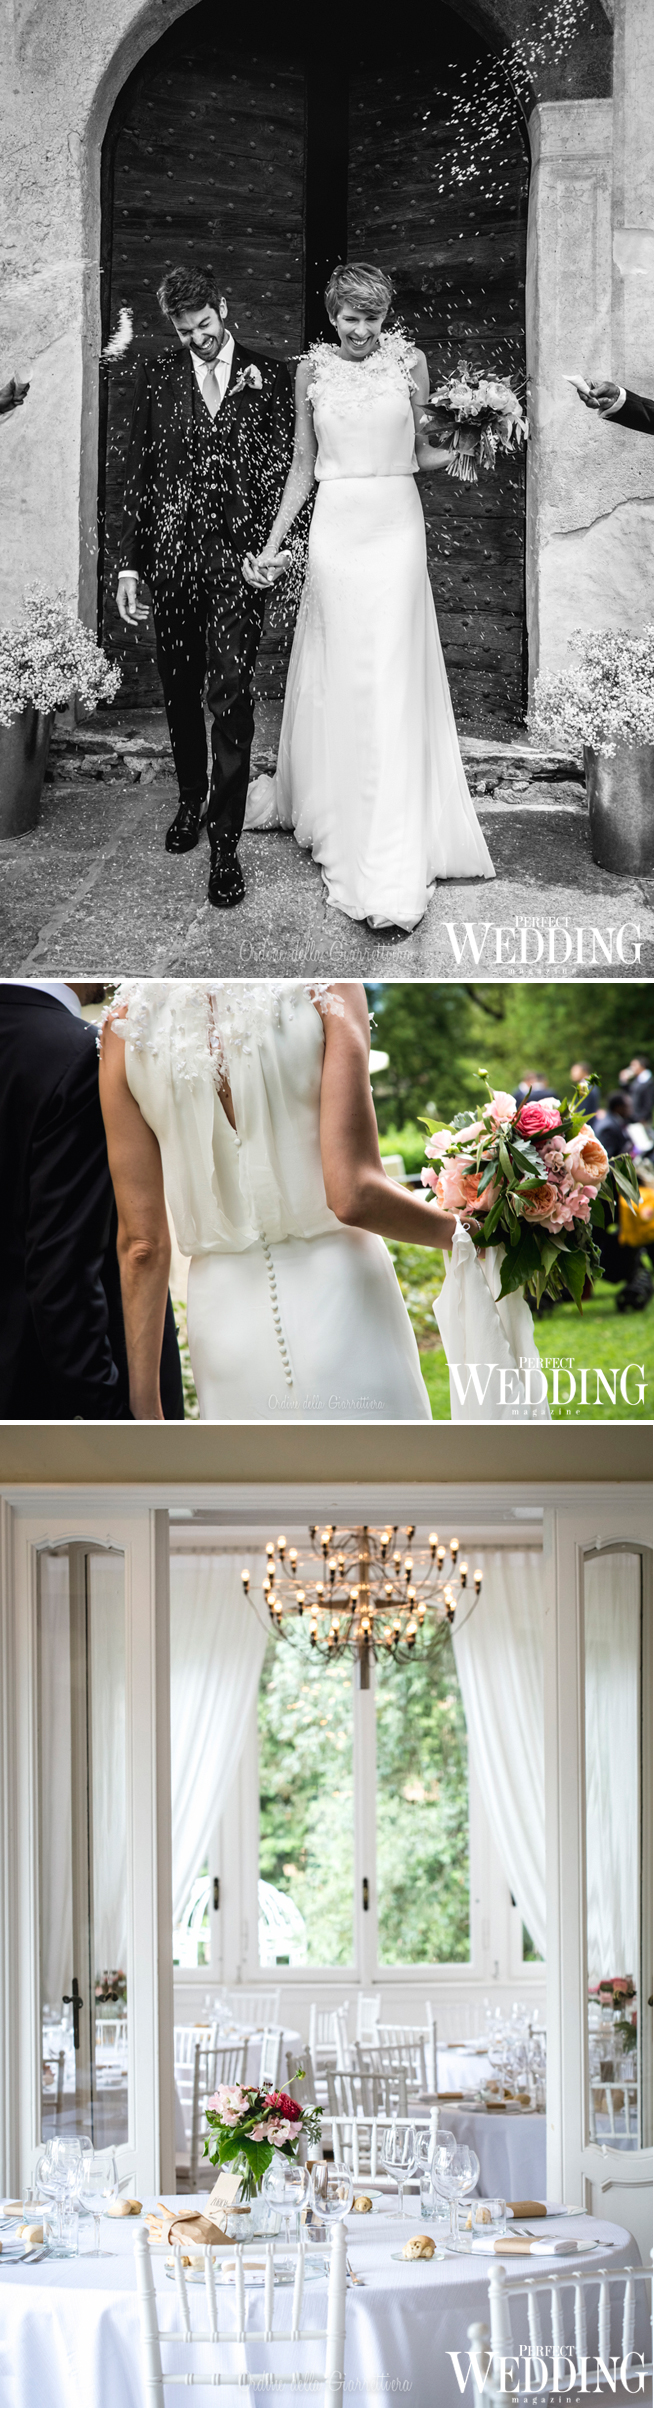 Belief Wedding Planners, Belief Awards, Perfect Wedding Magazine, Perfect wedding Blog, Wedding Decor, Destination Wedding